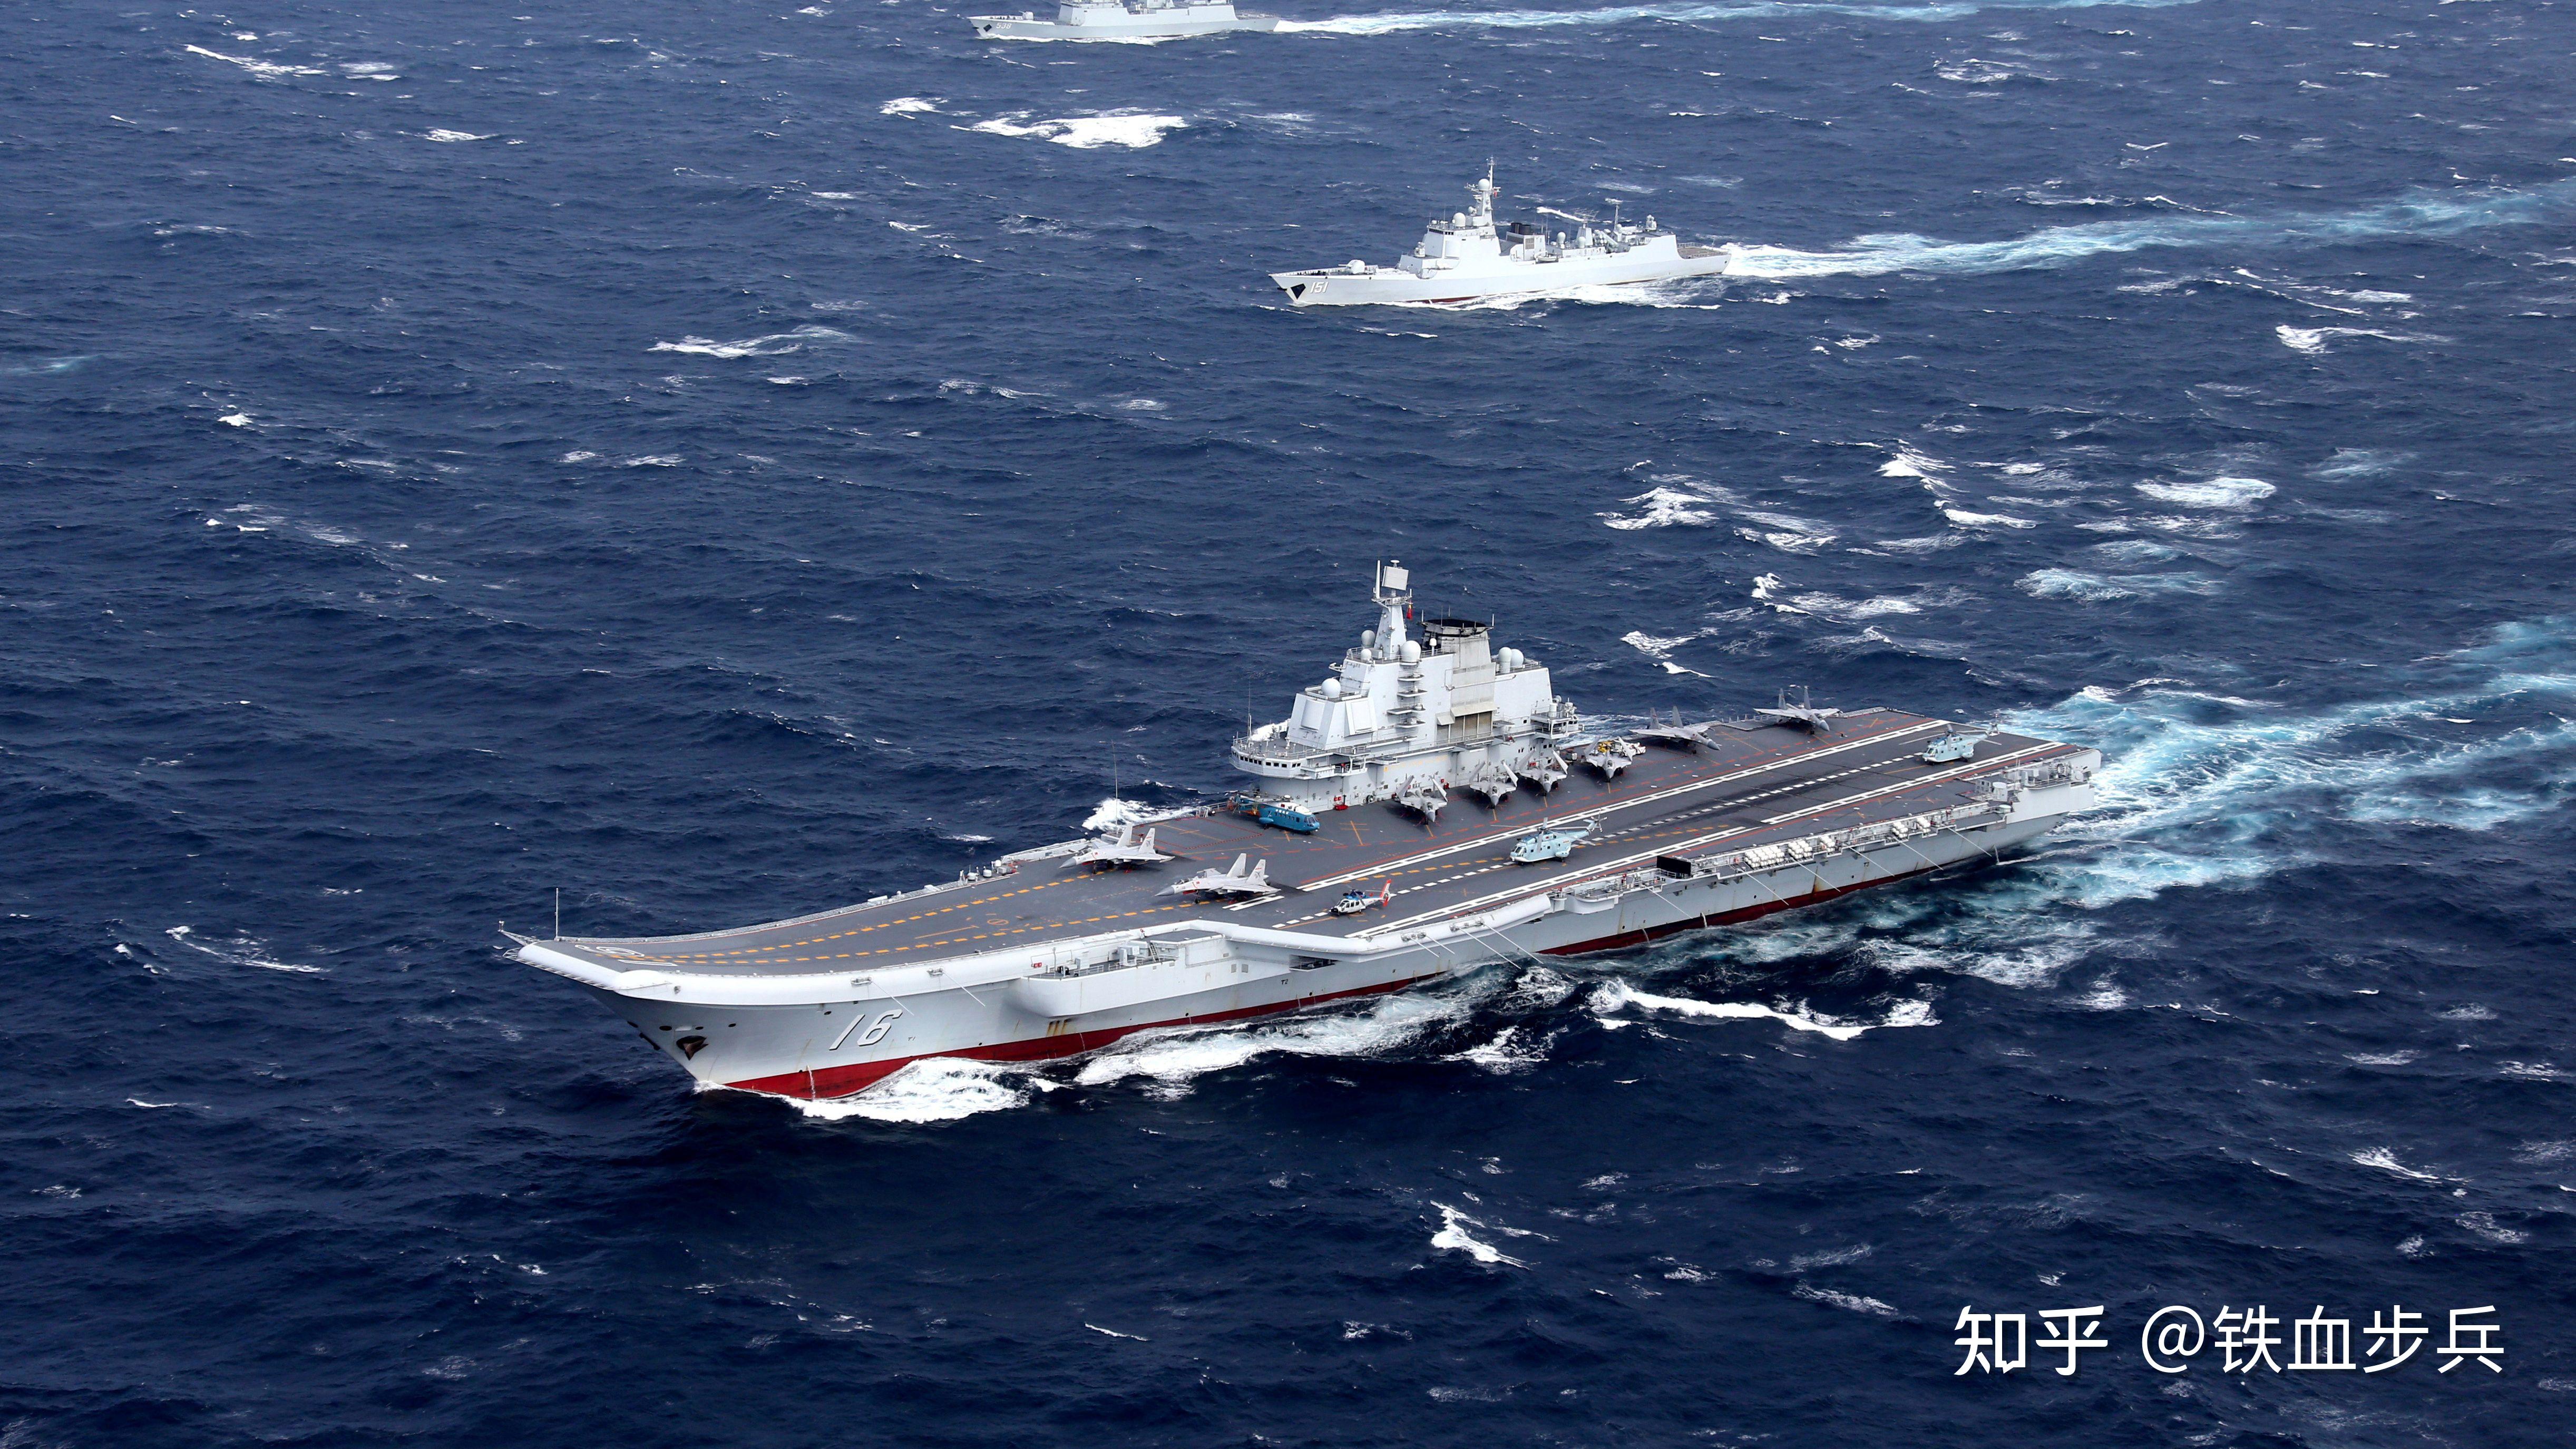 中国和俄罗斯的常规军事力量目前谁更强